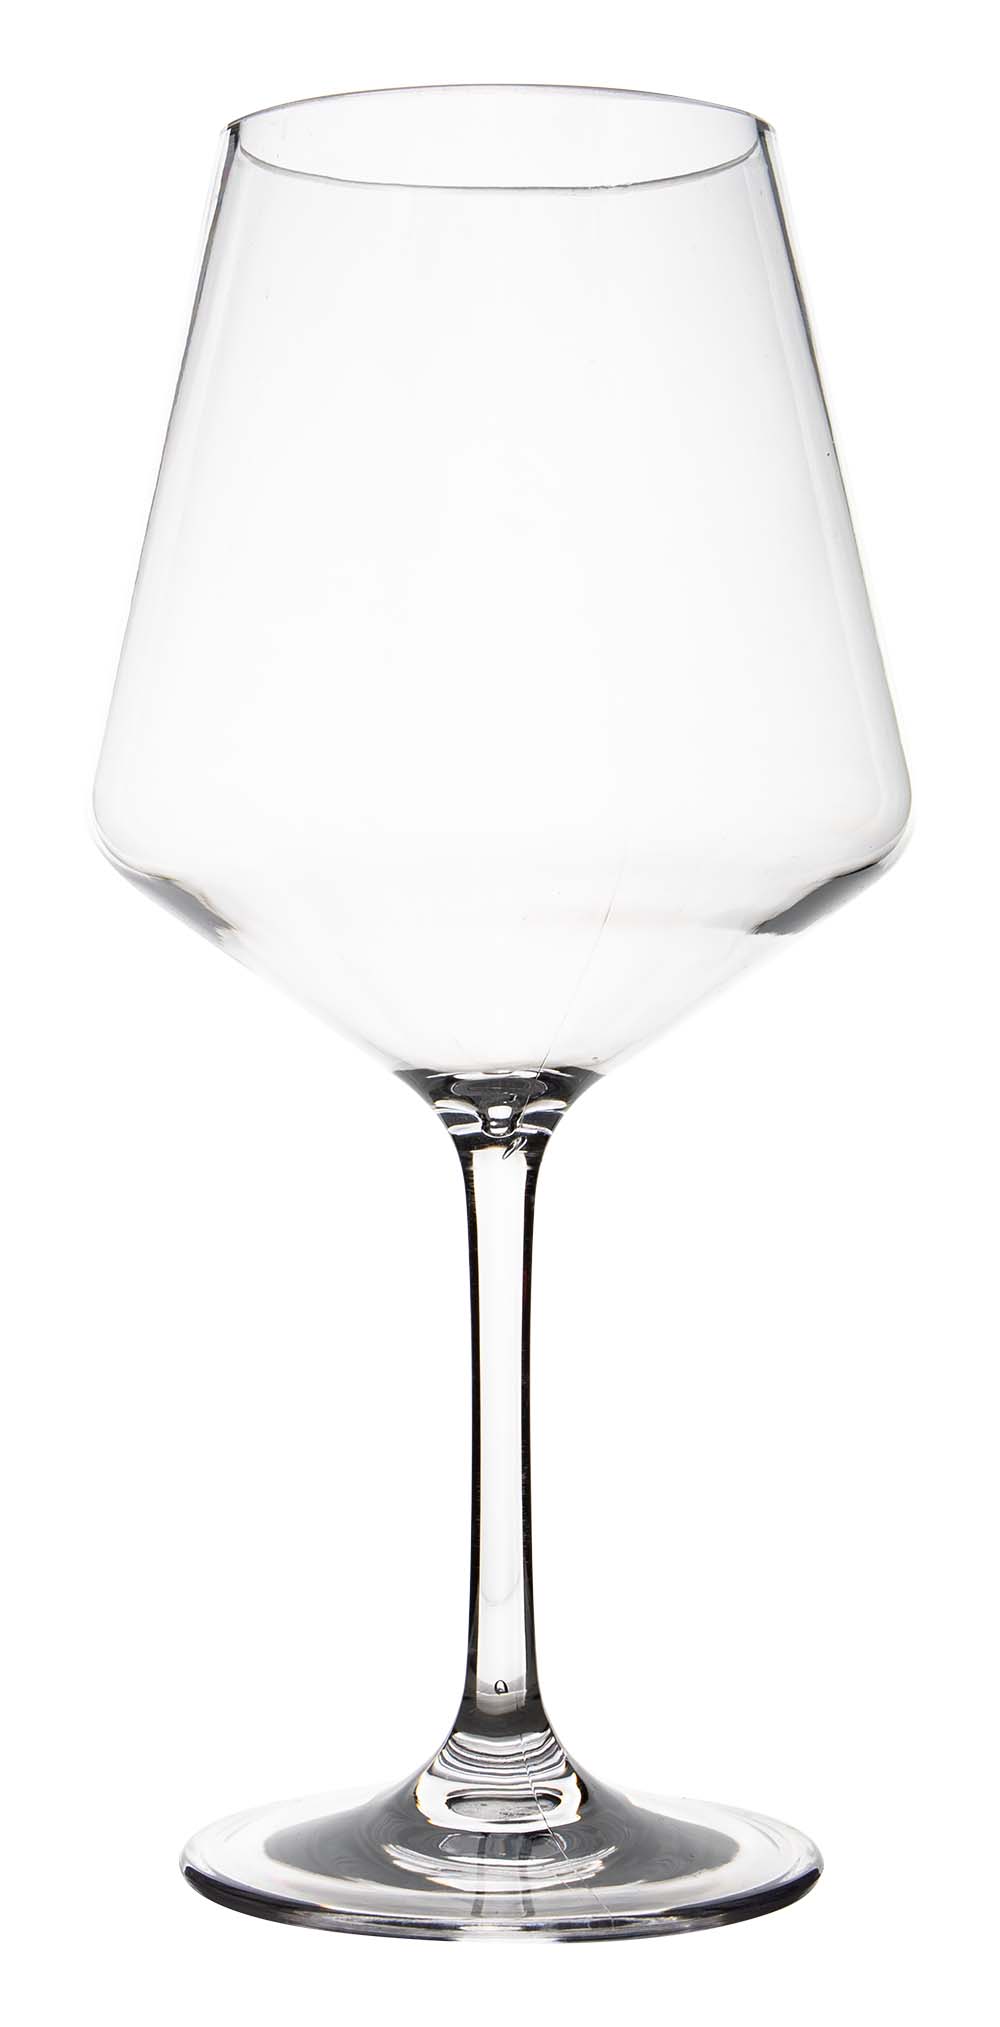 6967907 Een stijlvol rode wijnglas uit de Solid line collectie. Vrijwel onbreekbaar door hoogwaardig polycarbonaat materiaal. Bestaat uit een set van 2 stuks. Zeer gemakkelijk te reinigen en langdurig te gebruiken, wat het glas erg duurzaam maakt. Daarnaast is het rode wijnglas erg lichtgewicht en krasbestendig. Inhoud: 465 ml.